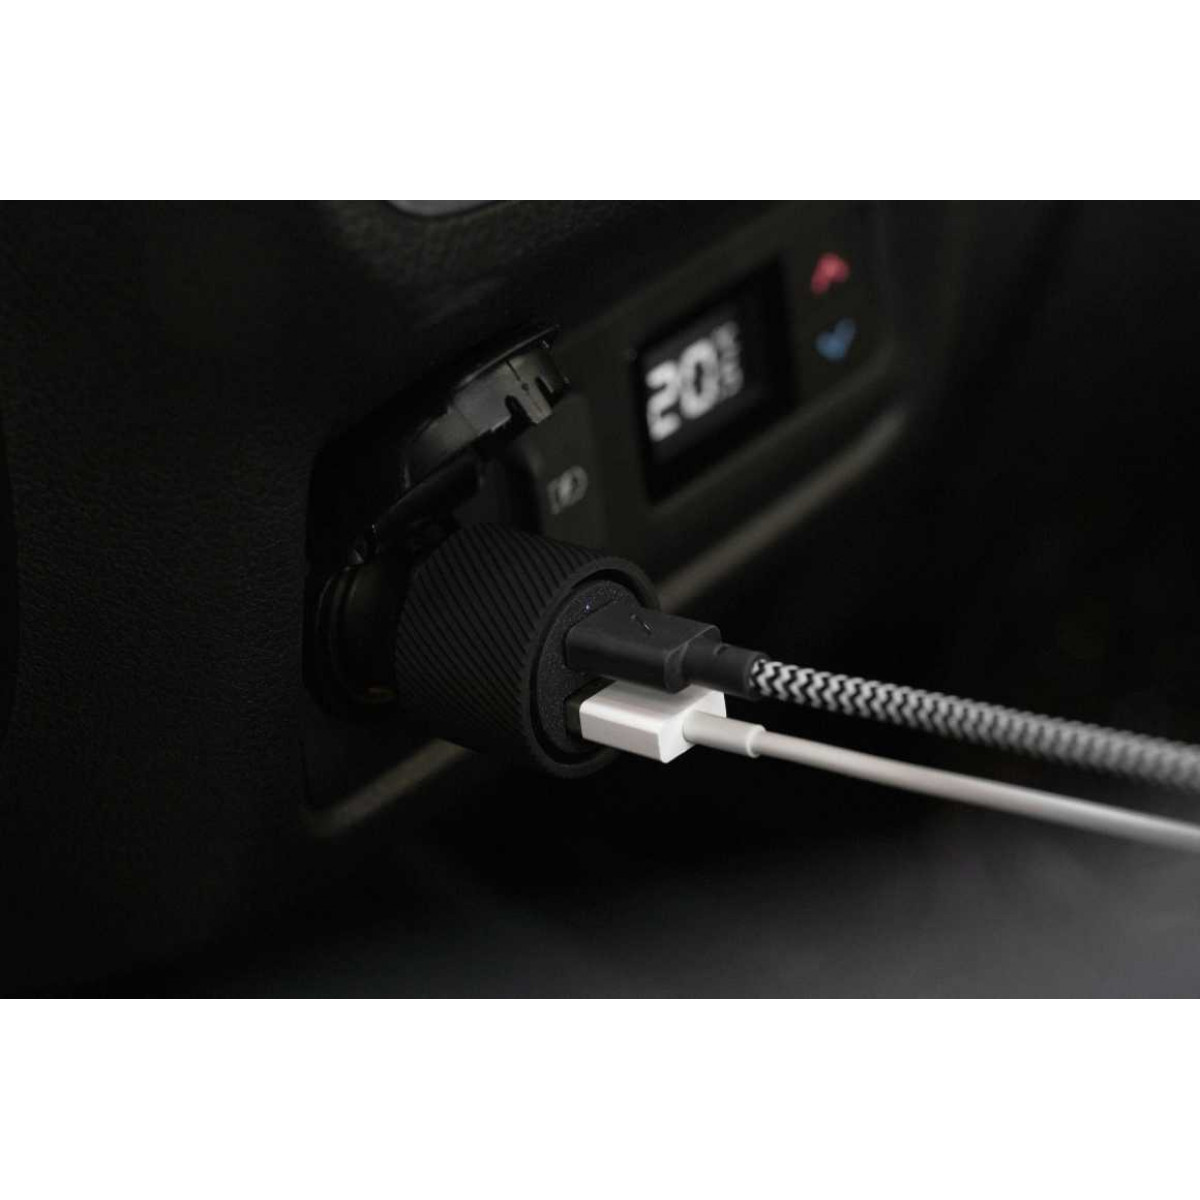 Автомобильное зарядное устройство Native Union Car Charger USB-A + USB-С, 30 Вт, черный